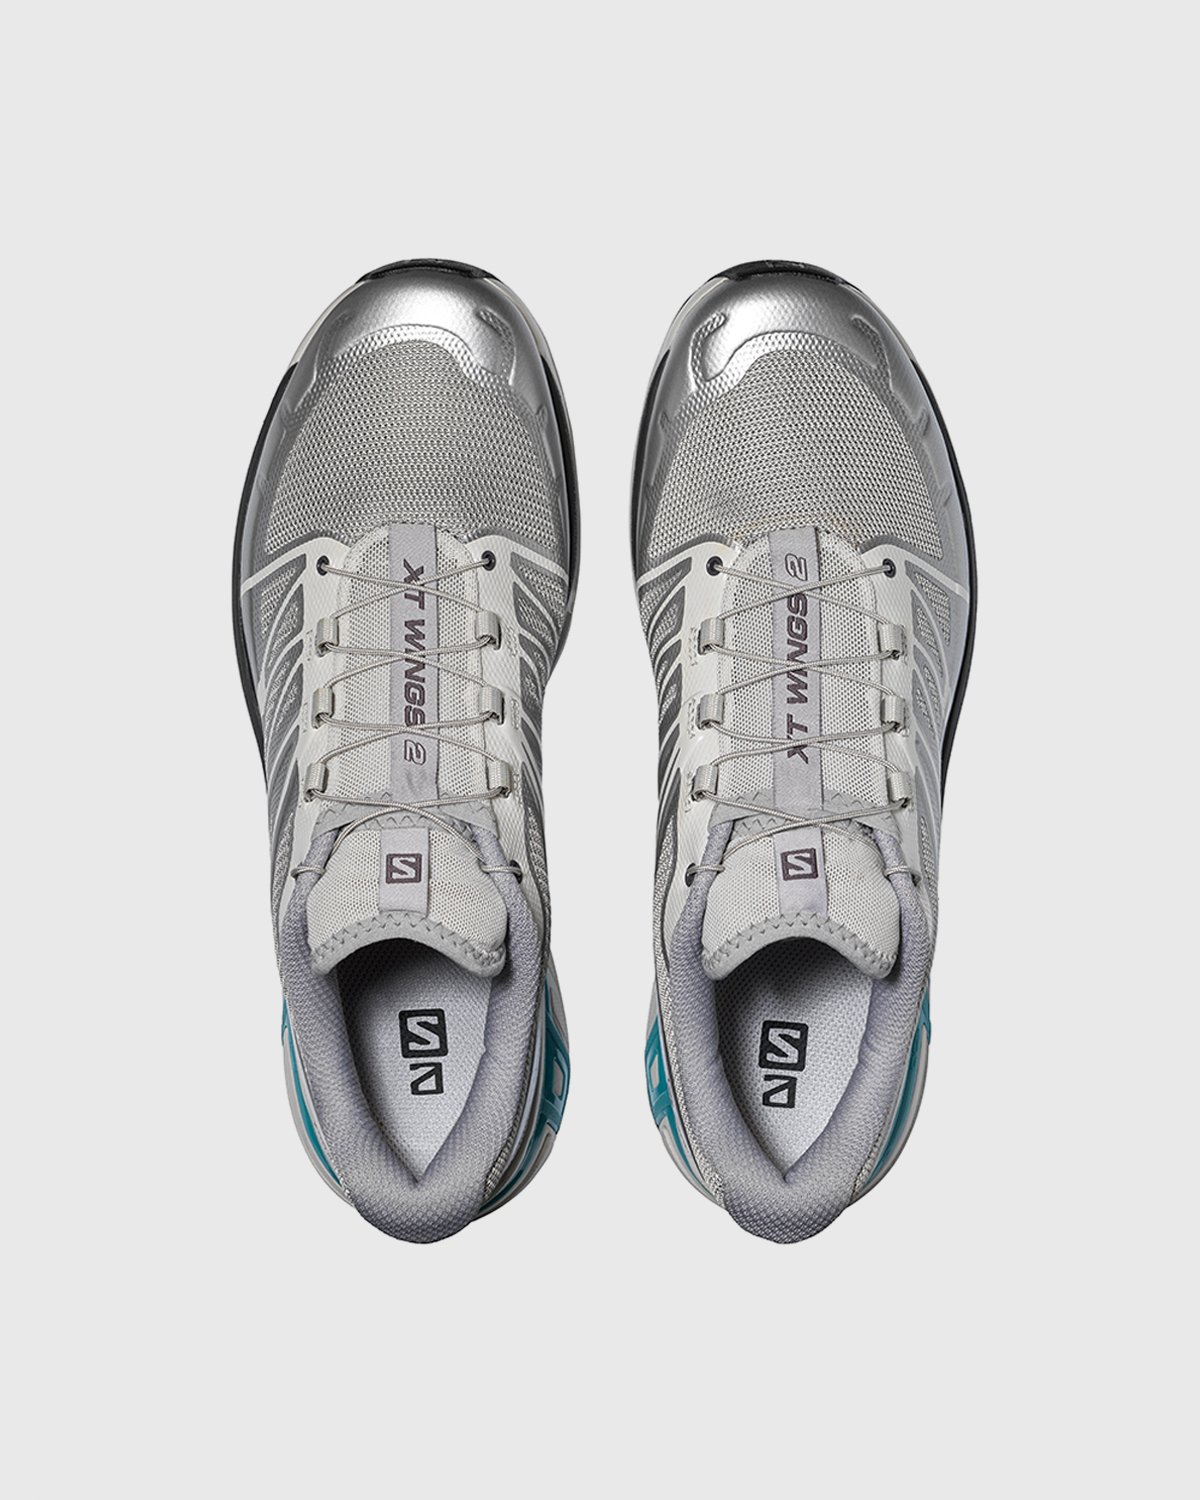 Salomon - XT-Wings 2 Advanced Silver - Footwear - Grey - Image 4